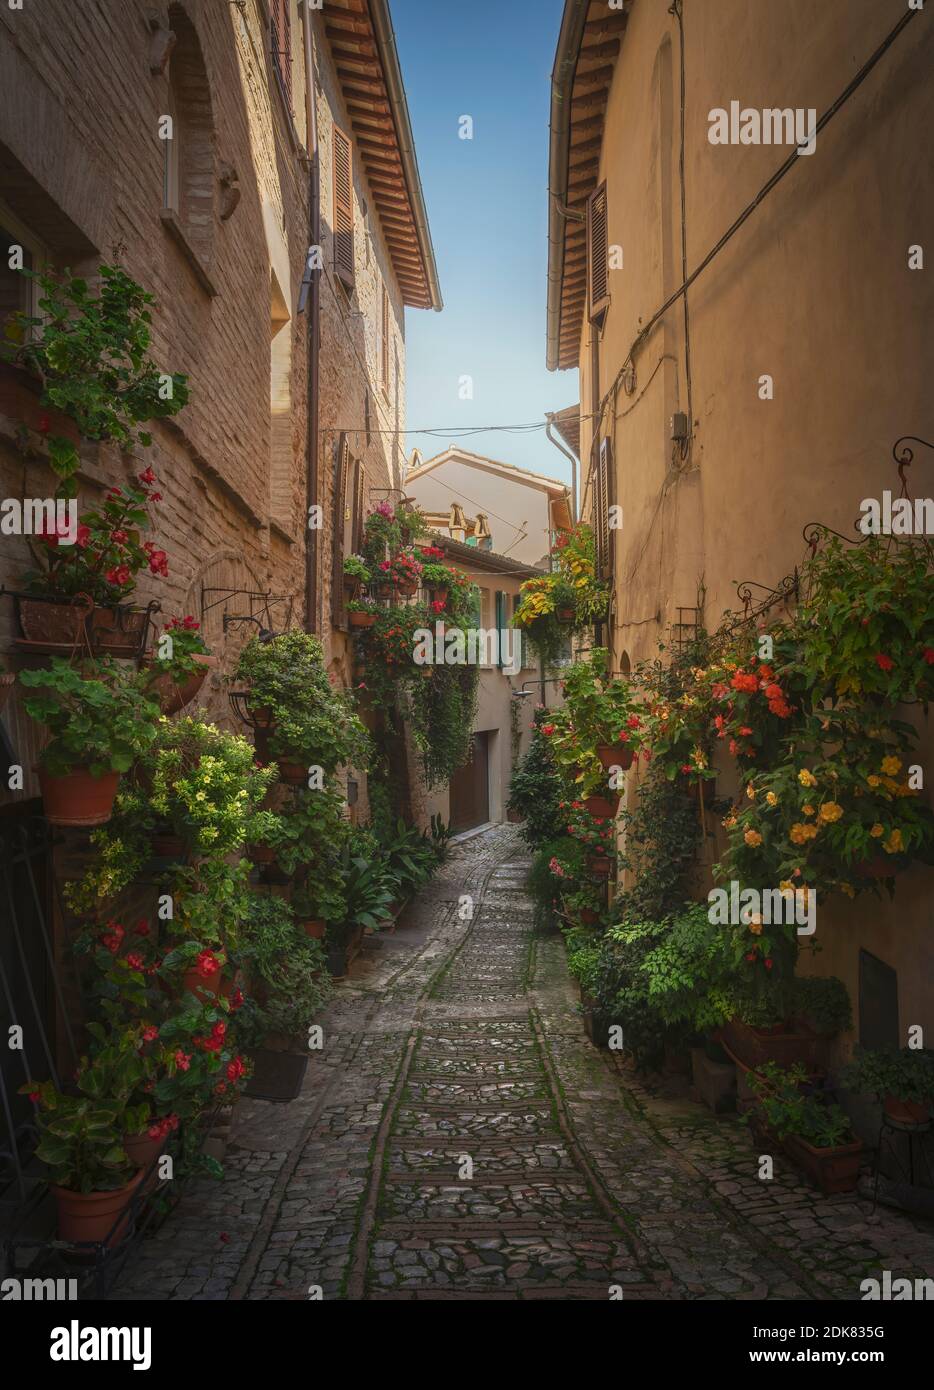 Spello Infiorata rue du village, plantes et fleurs attachées aux murs. Pérouse, Ombrie, Italie, Europe. Banque D'Images